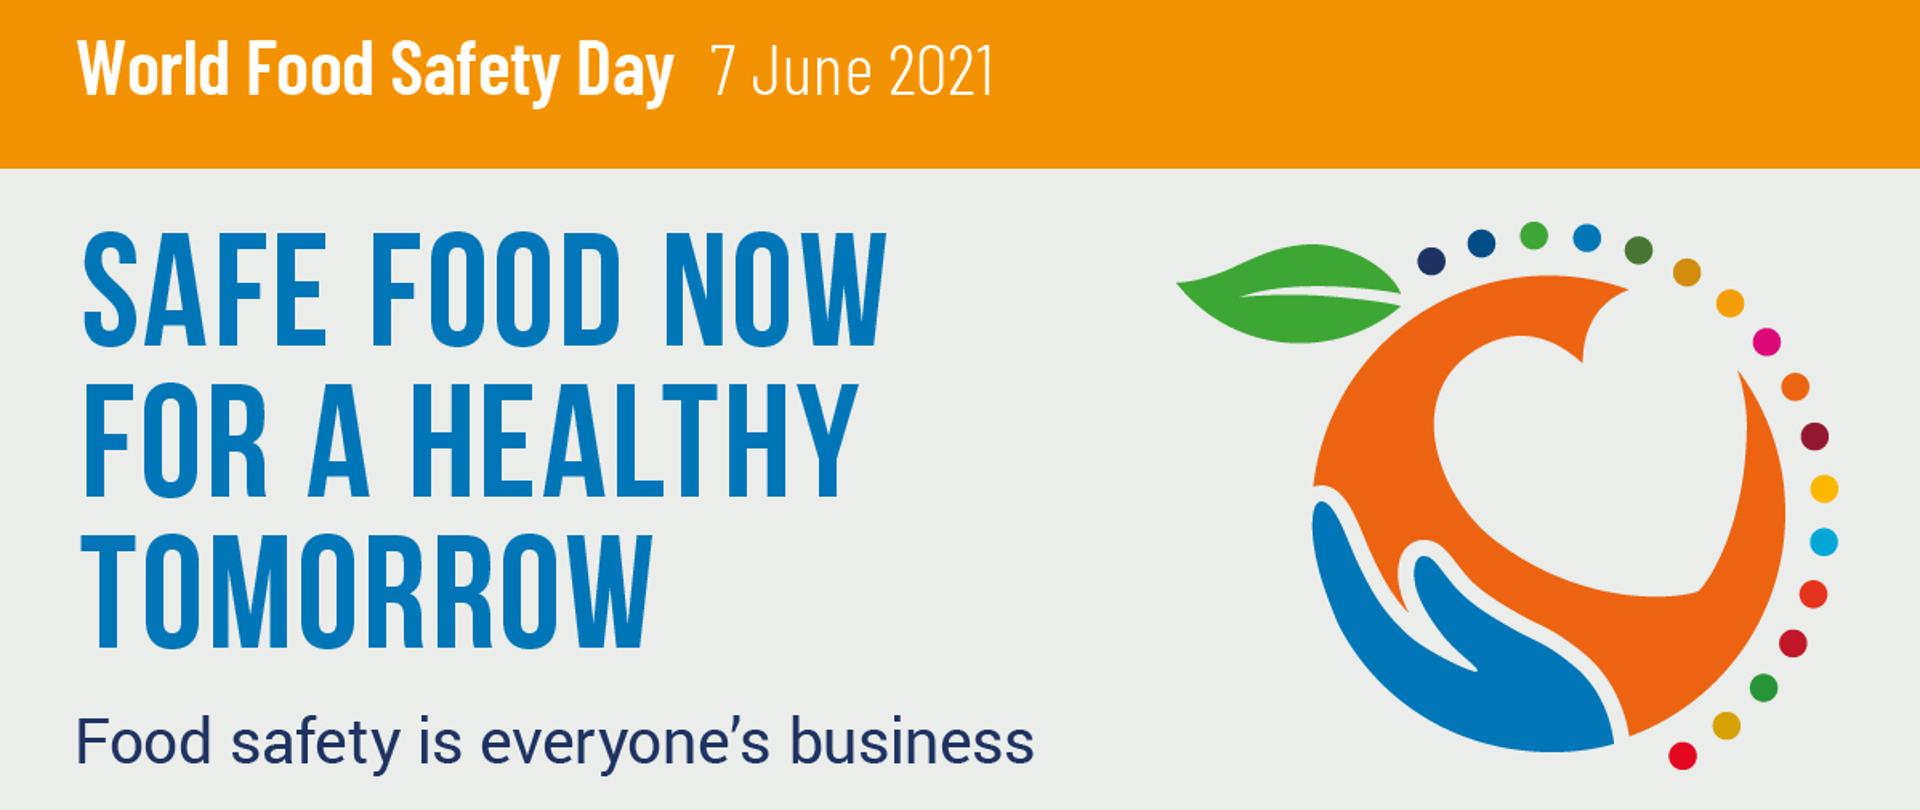 Grafika przedstawia obowiązujące hasło Światowego Dnia Bezpieczeństwa Żywności, obchodzonego w 2021: SAFE FOOD NOW FOR A HEALTHY TOMORROW wraz z symboliczną grafiką oraz m. in. logiem WHO.